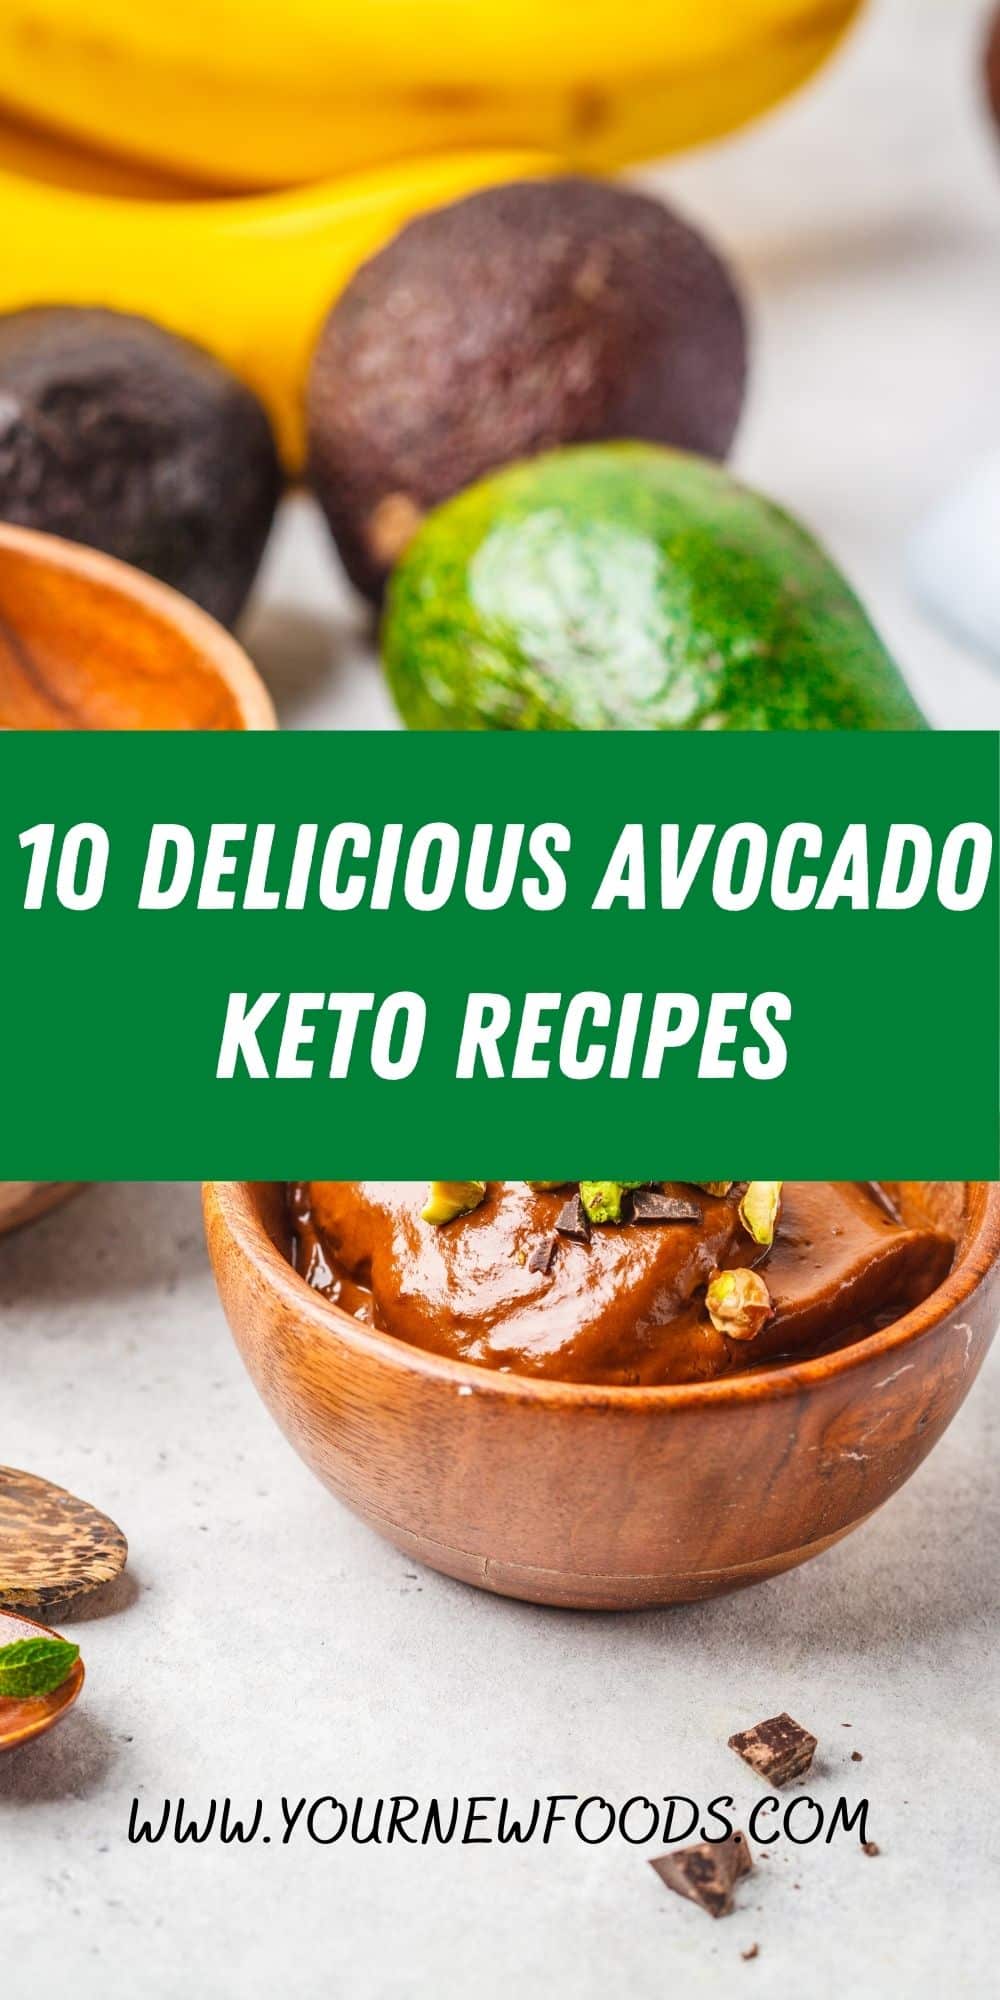 10 Delicious Avocado Keto Recipes